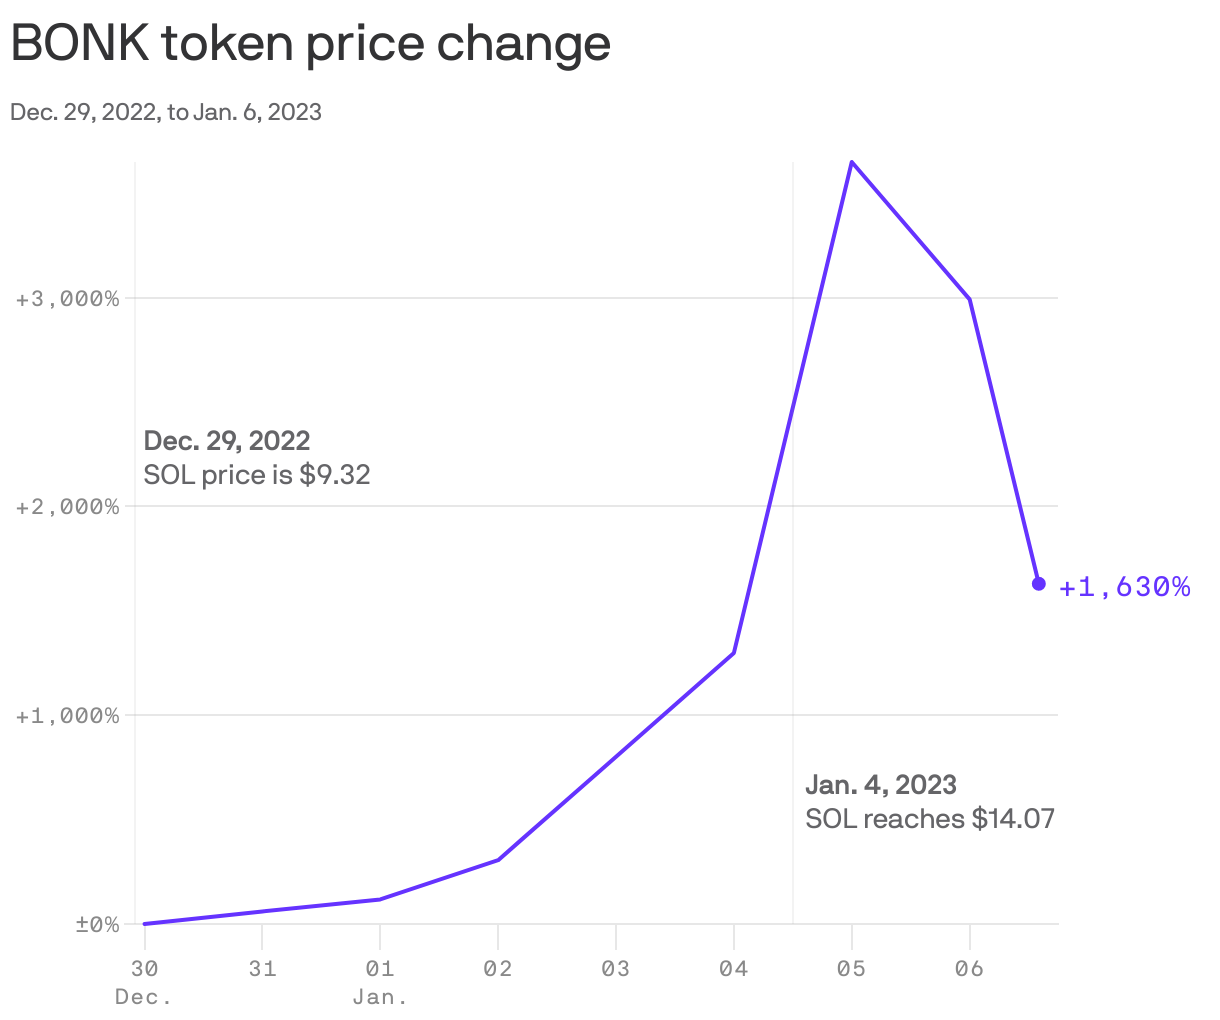 BONK token price change